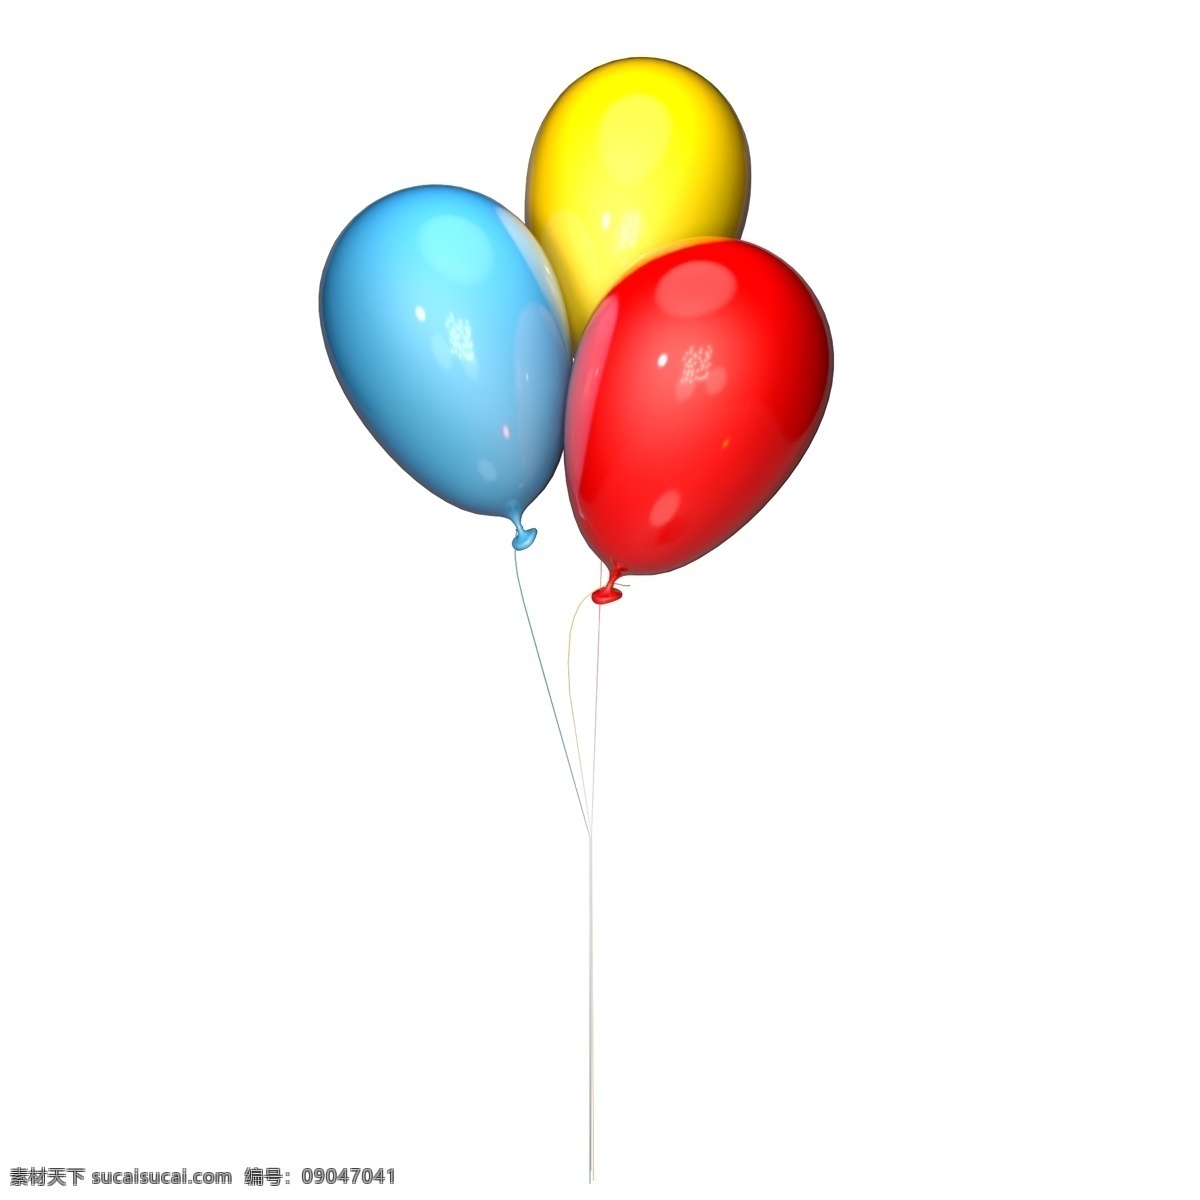 束 彩色 气球 装饰 一束气球 卡通气球 彩色气球 儿童 可爱 浪漫 生日 节日 c4d 立体 立体气球